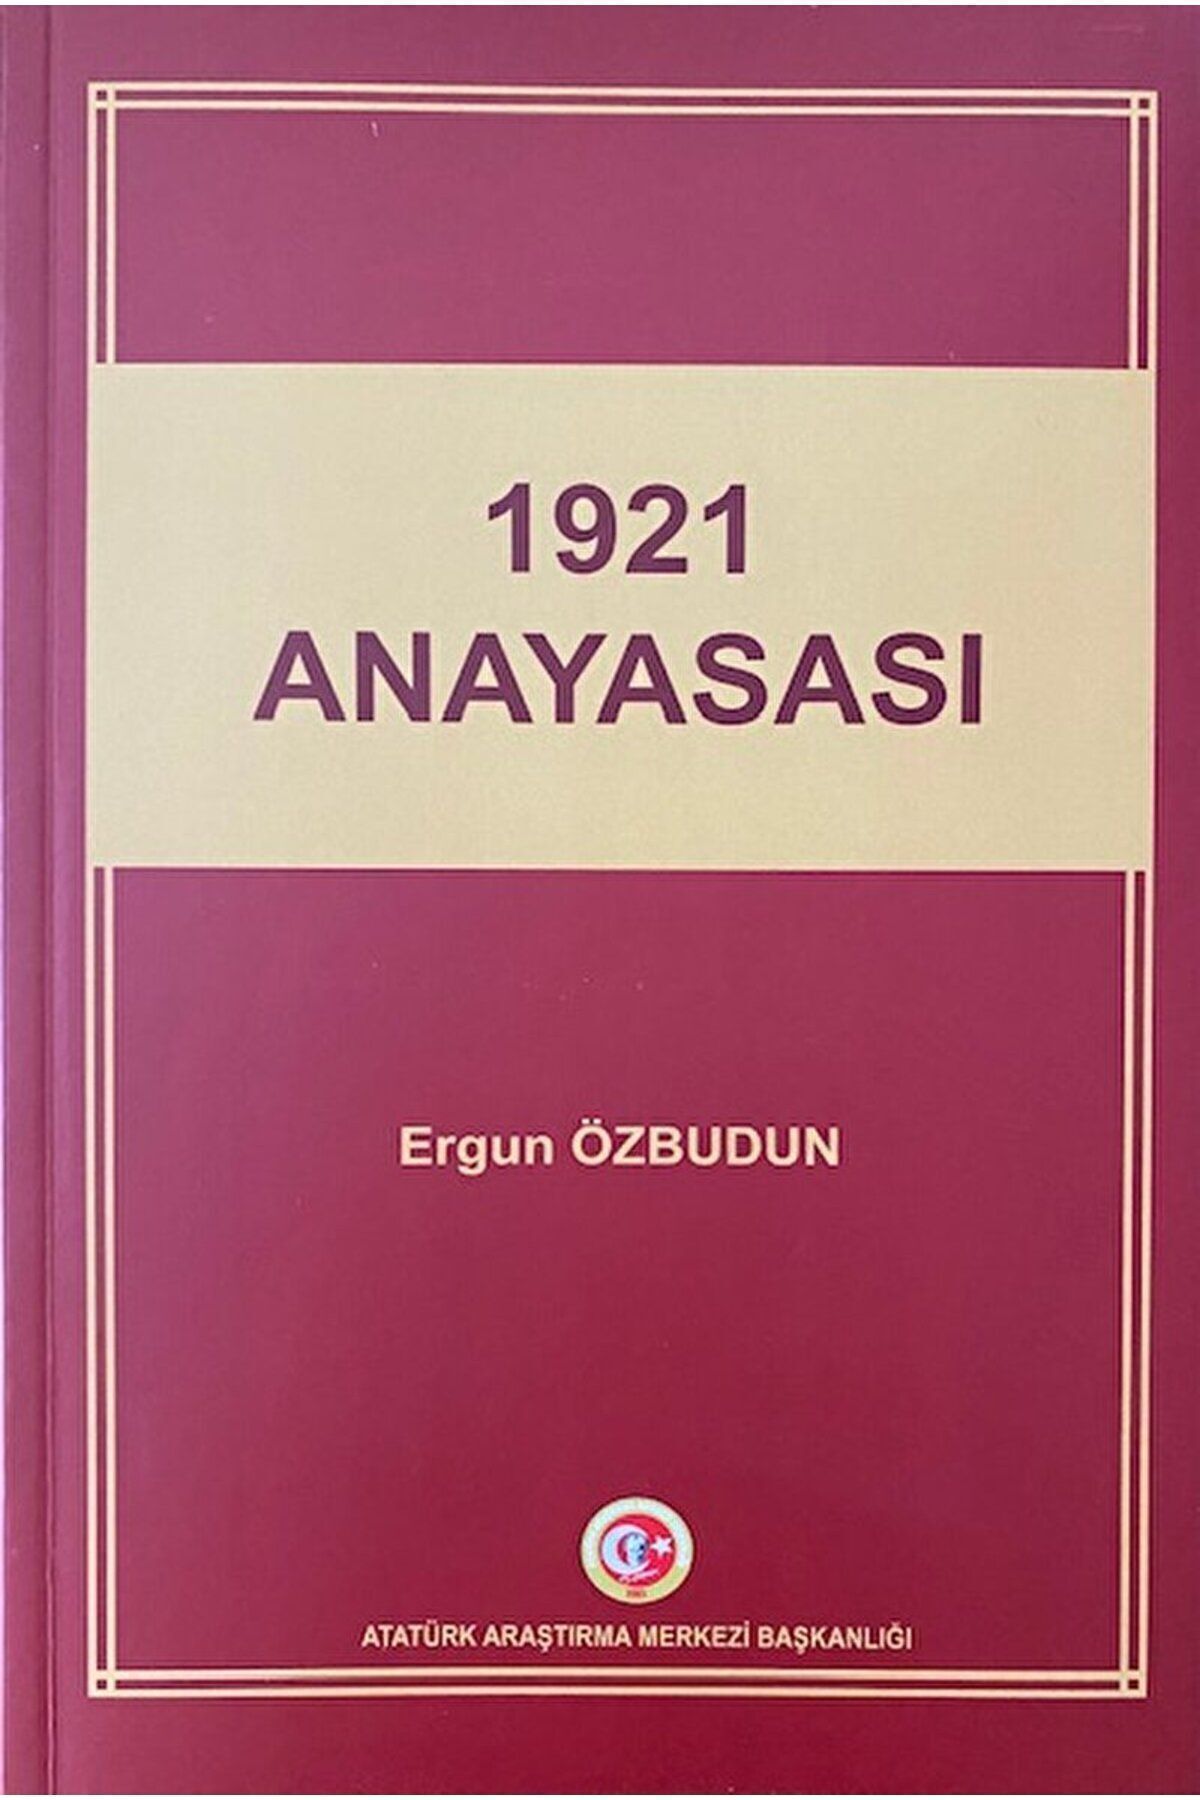 Atatürk Araştırma Merkezi 1921 Anayasası / Ergun Özbudun / Atatürk Araştırma Merkezi / 9789751737038